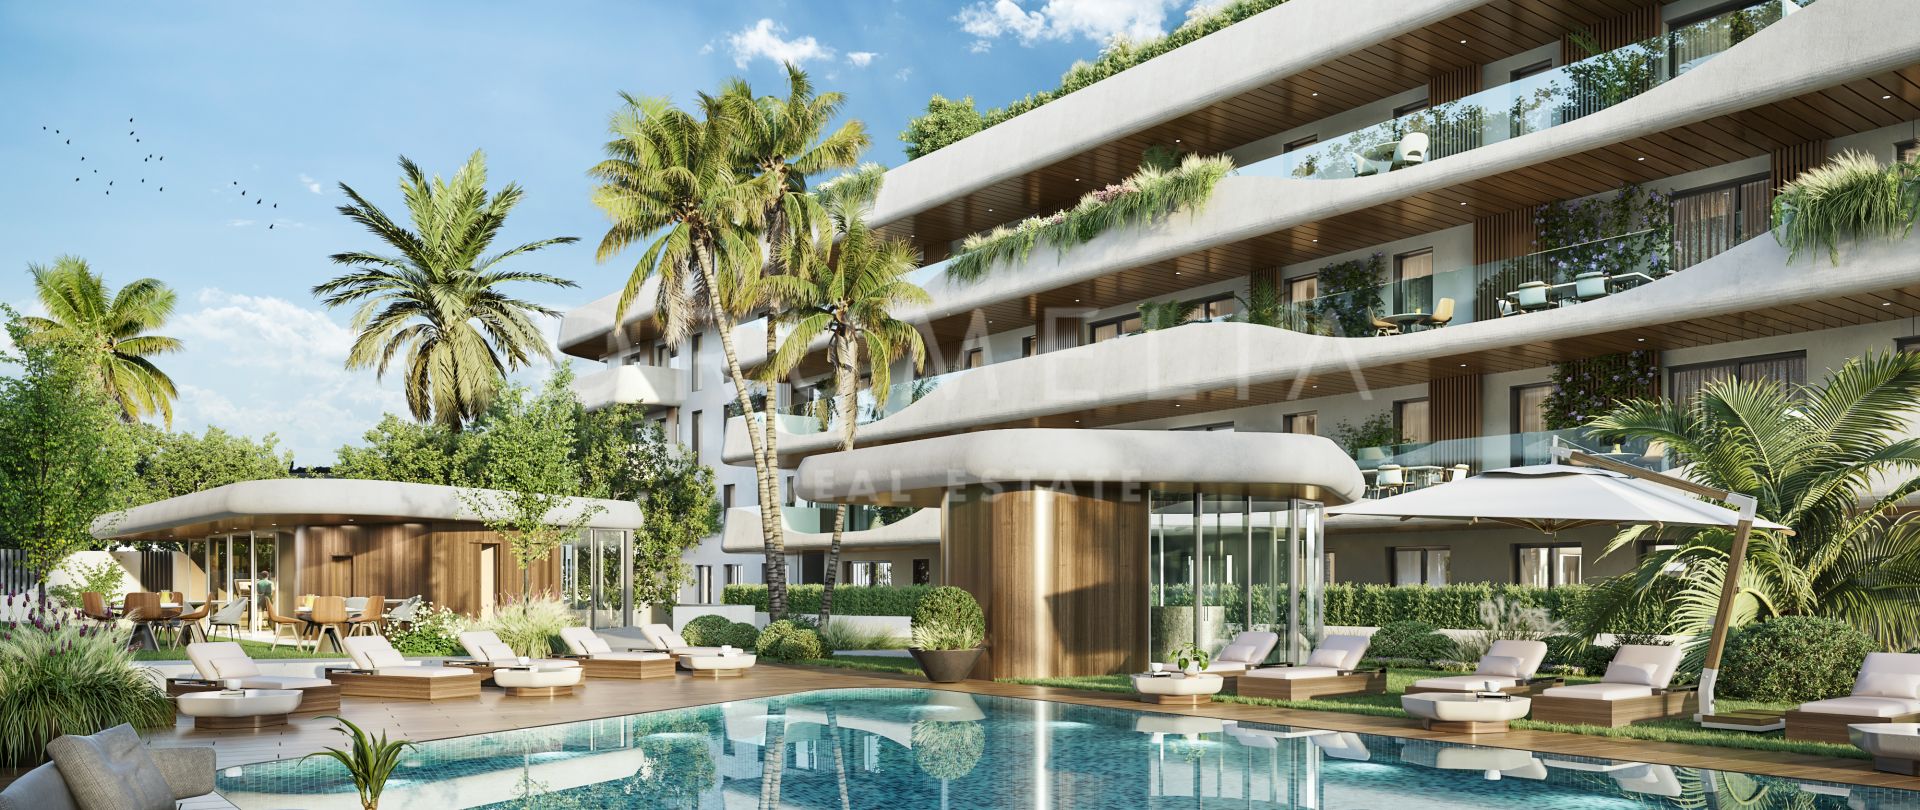 Impresionante apartamento de lujo moderno en una nueva urbanización chic en San Pedro, Marbella